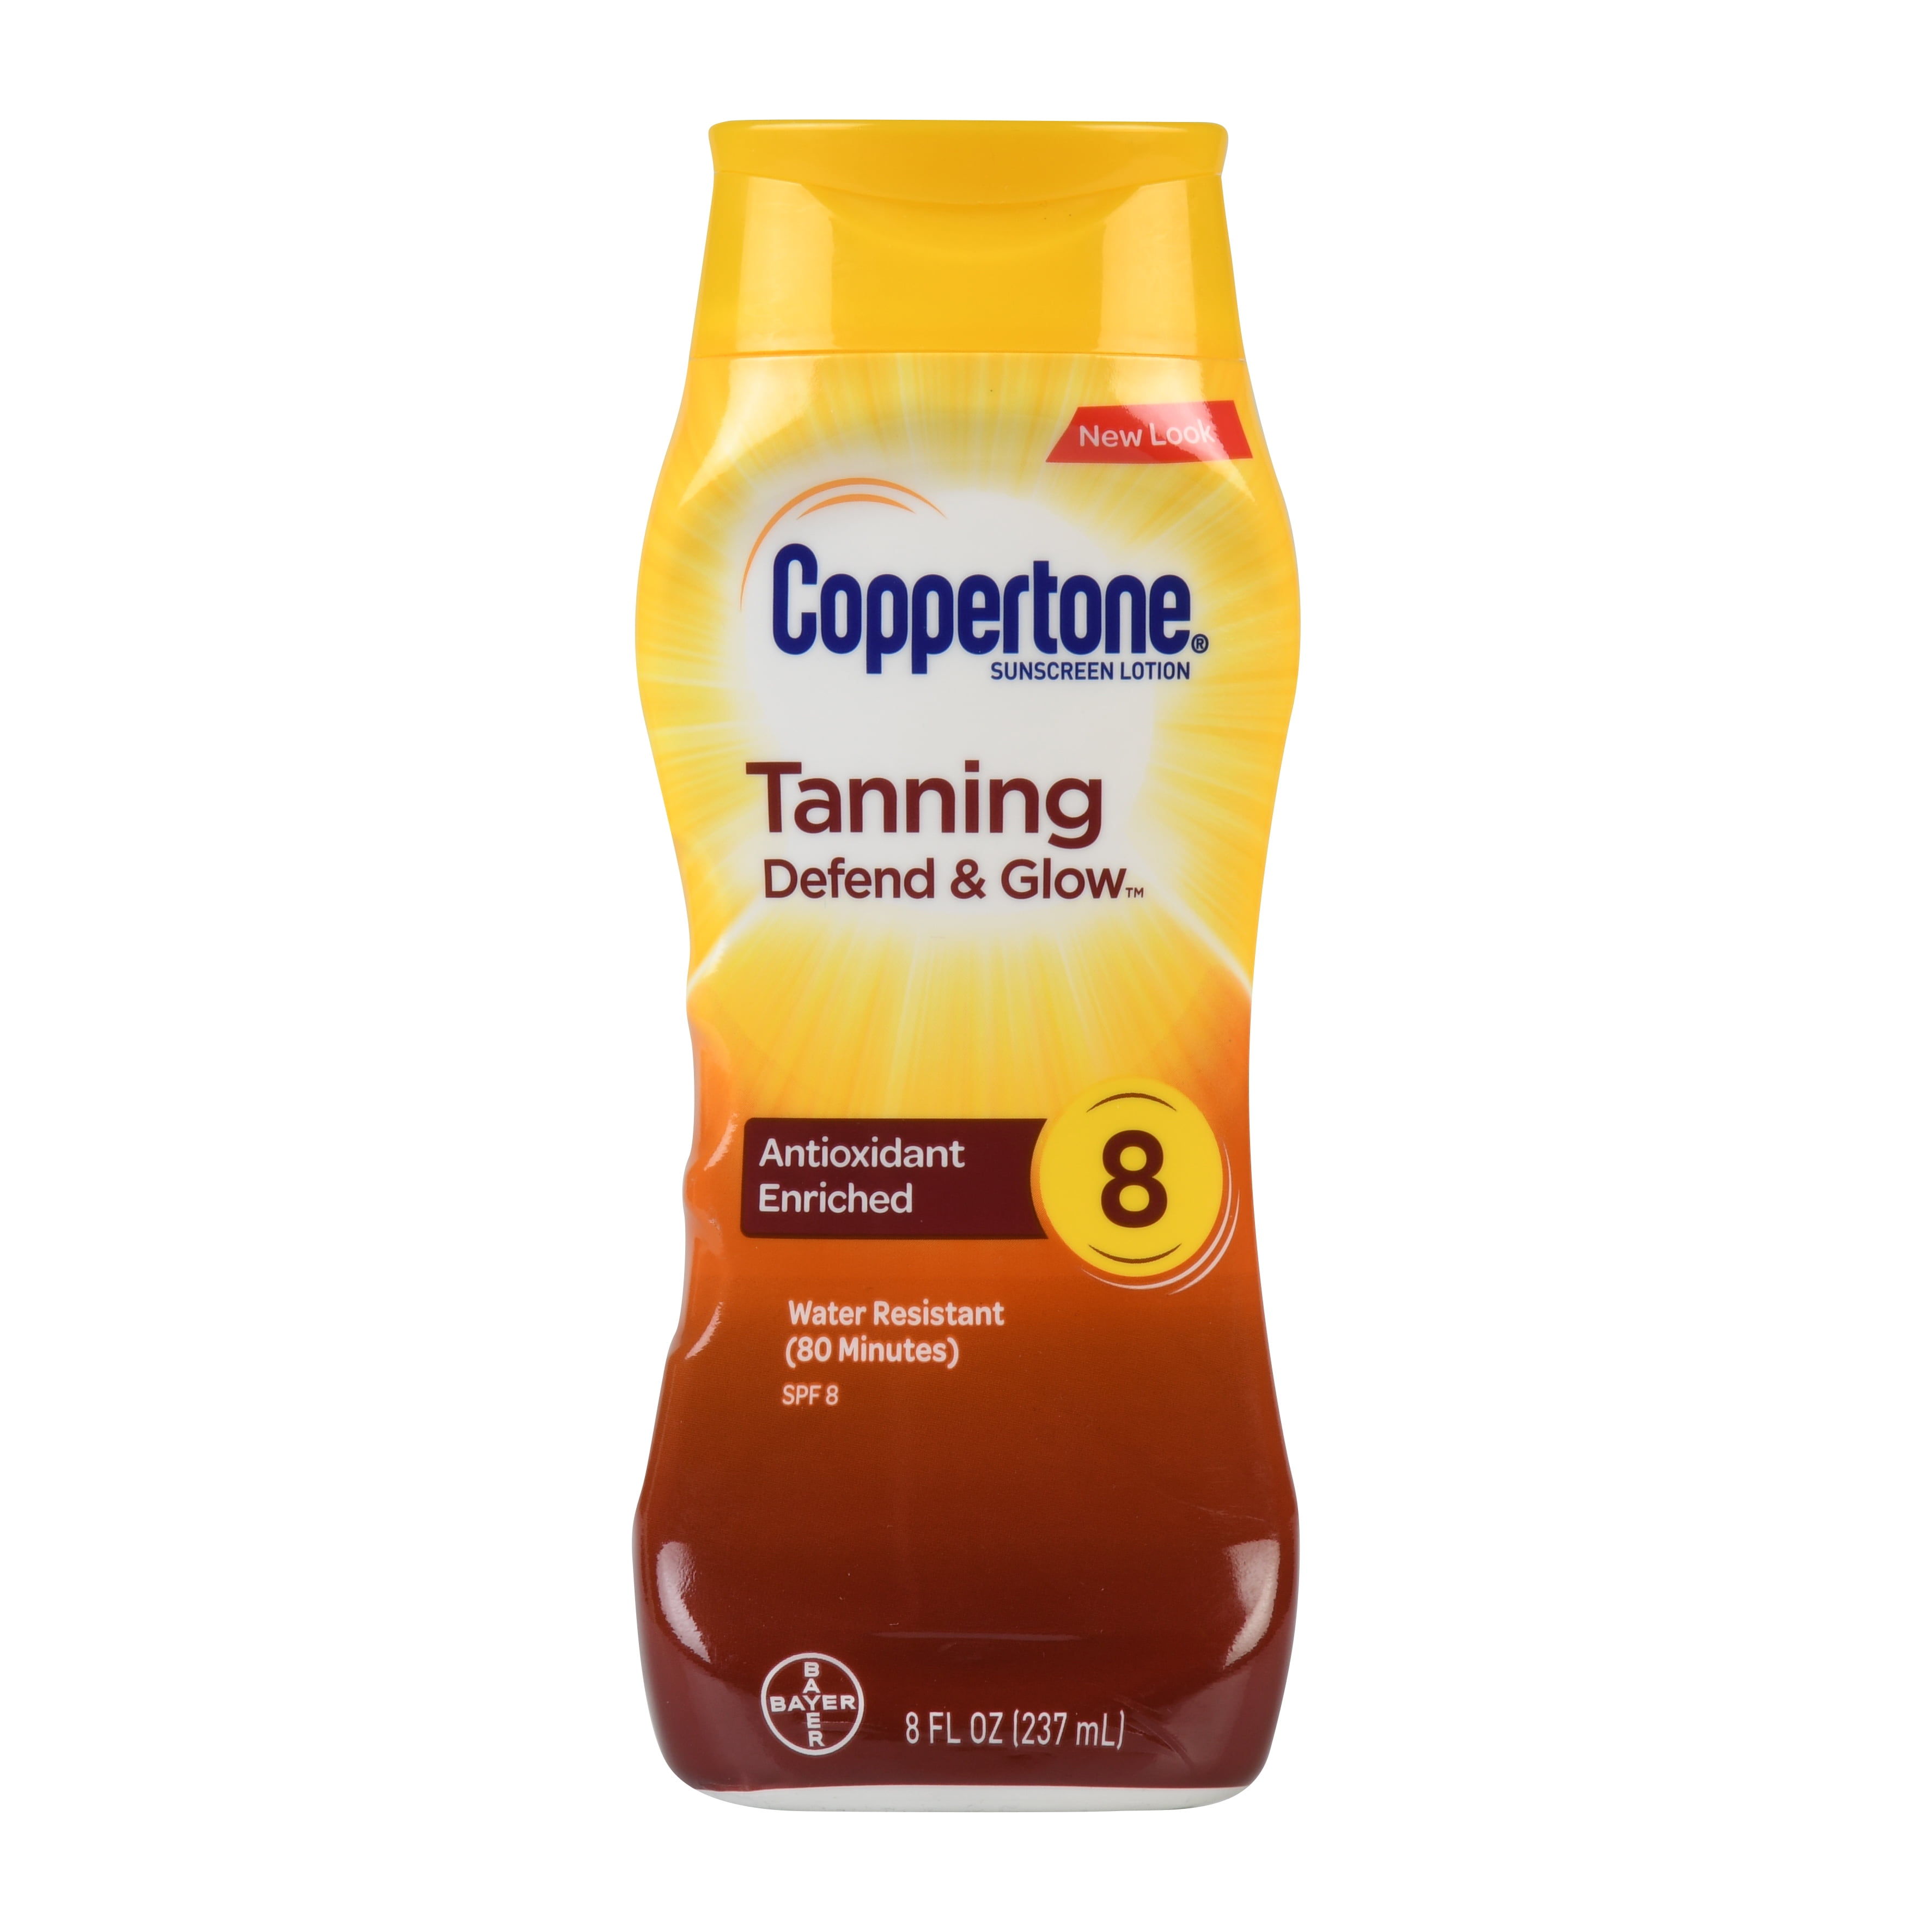 Coppertone Tanning Defend & Glow Sunscreen Vitamin E Lotion SPF 8, 8 fl oz